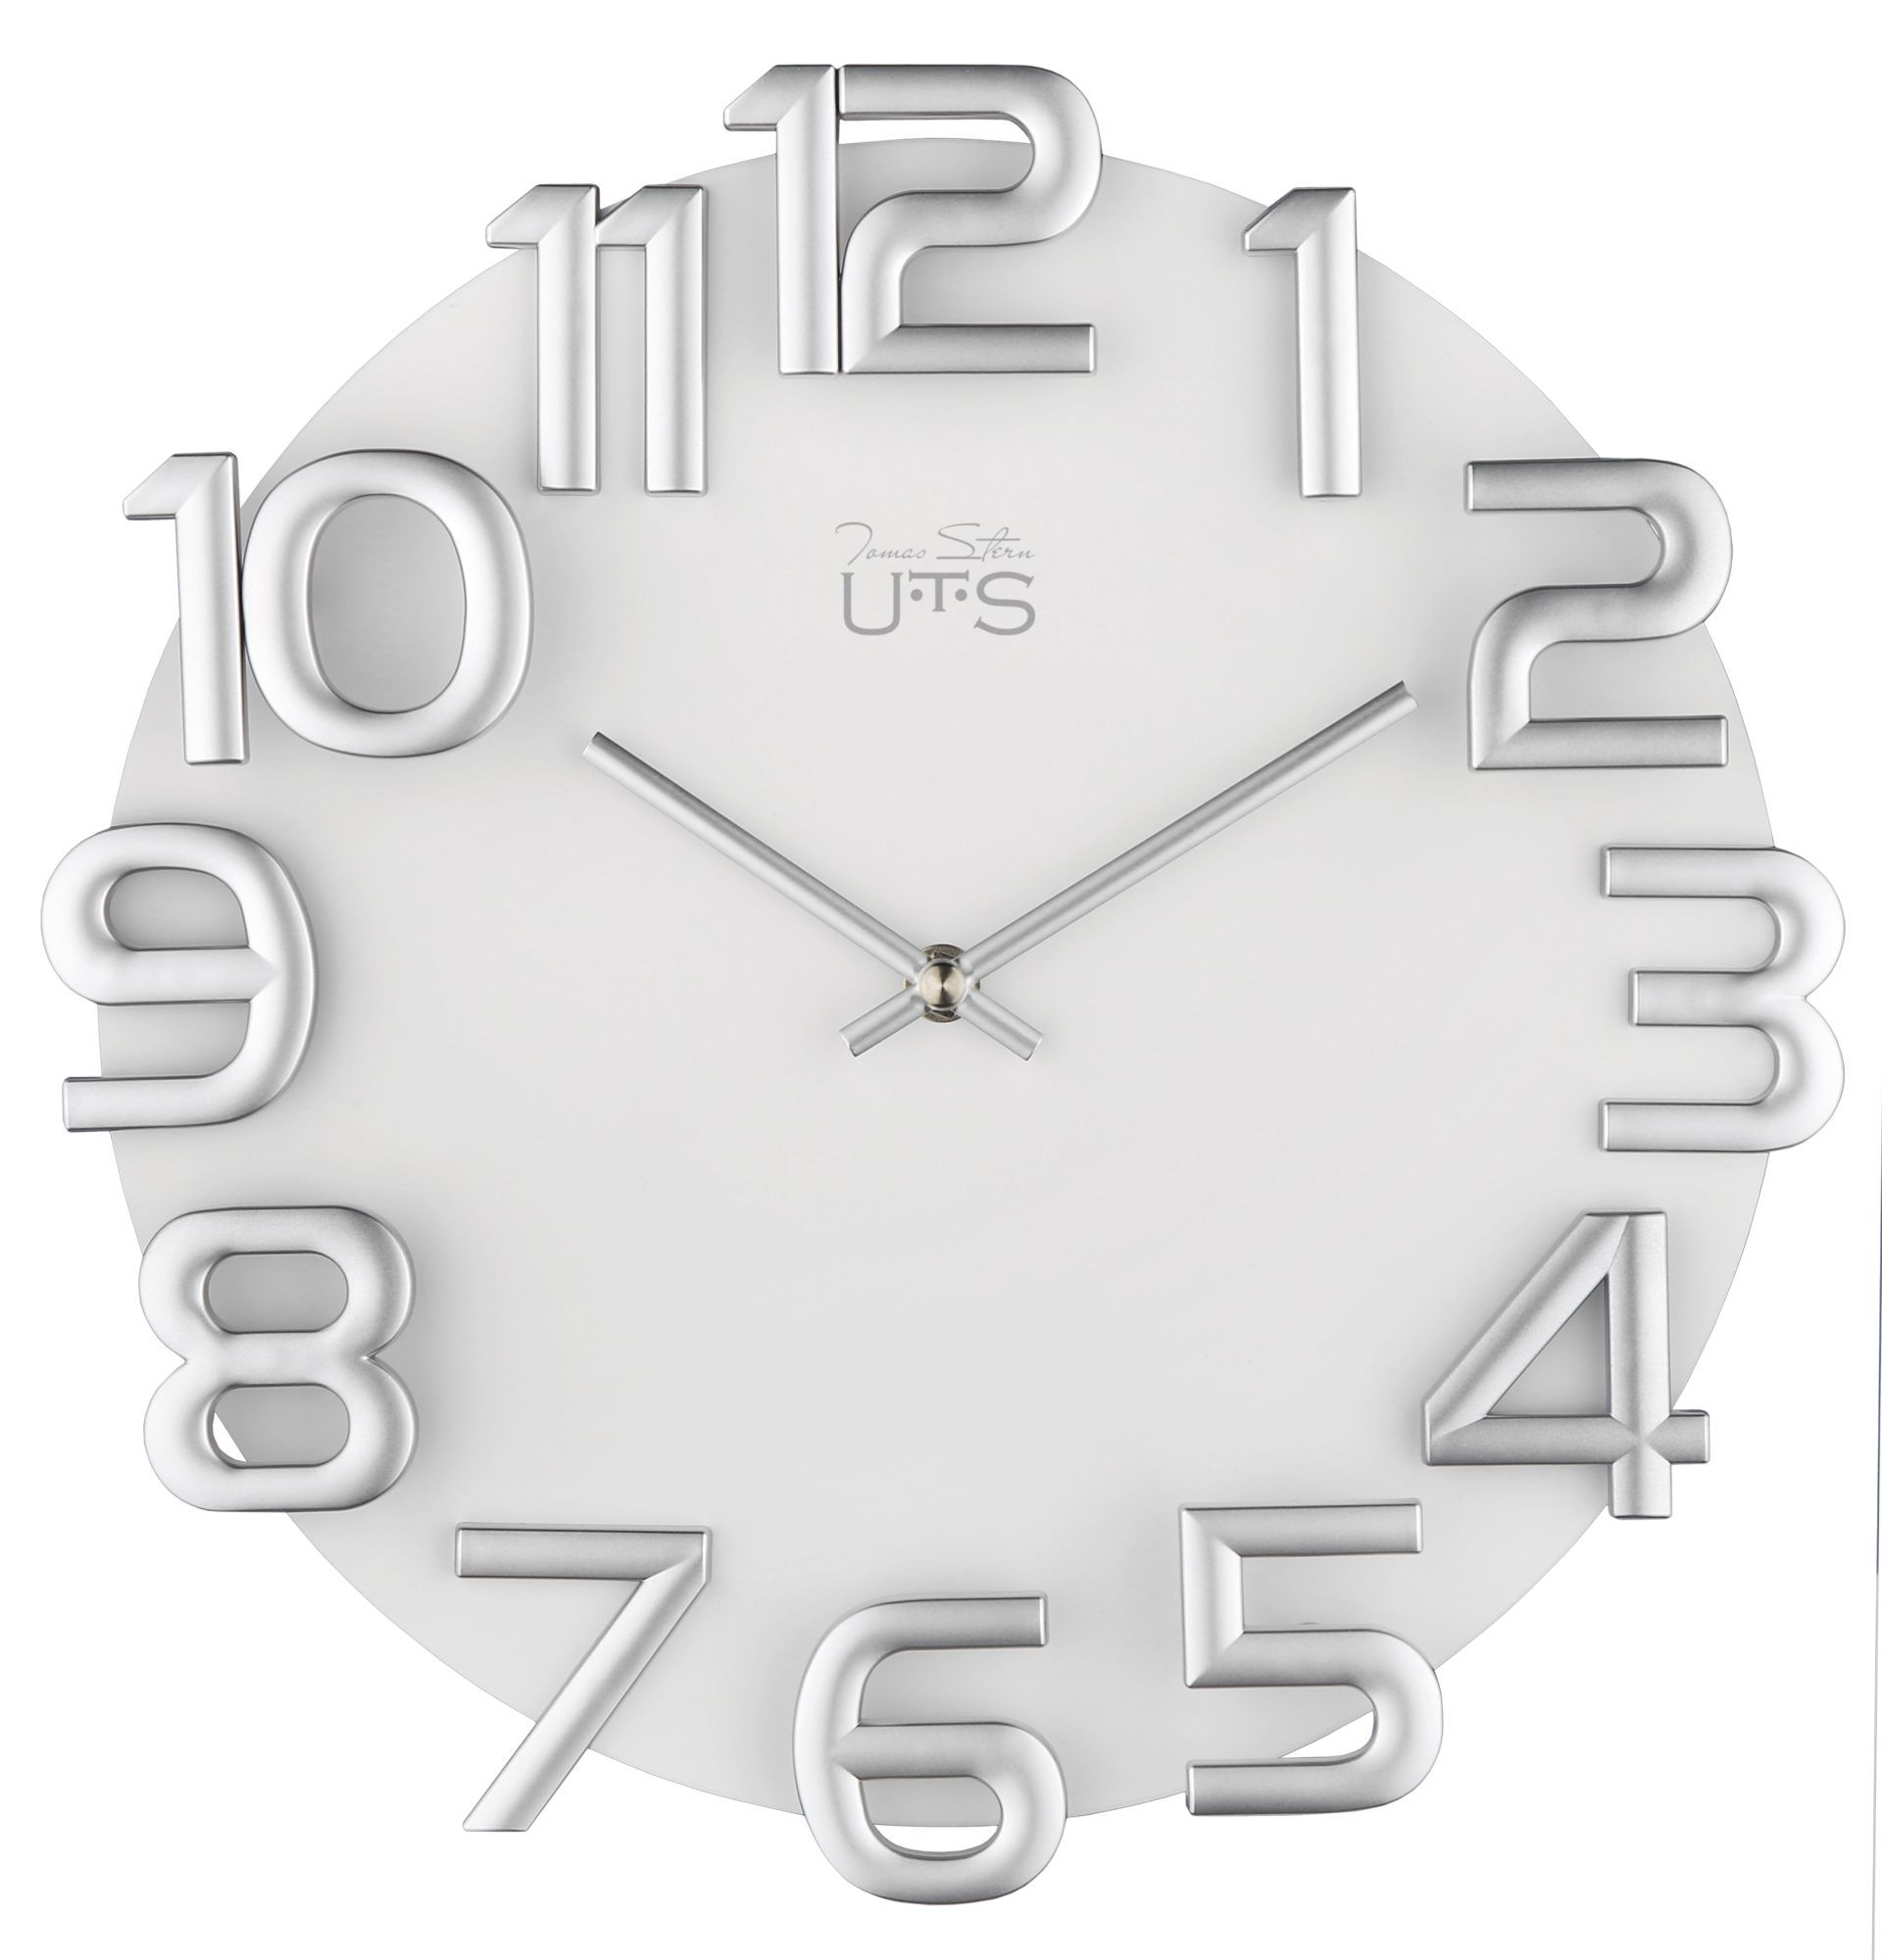 Настенные часы Tomas Stern 8045